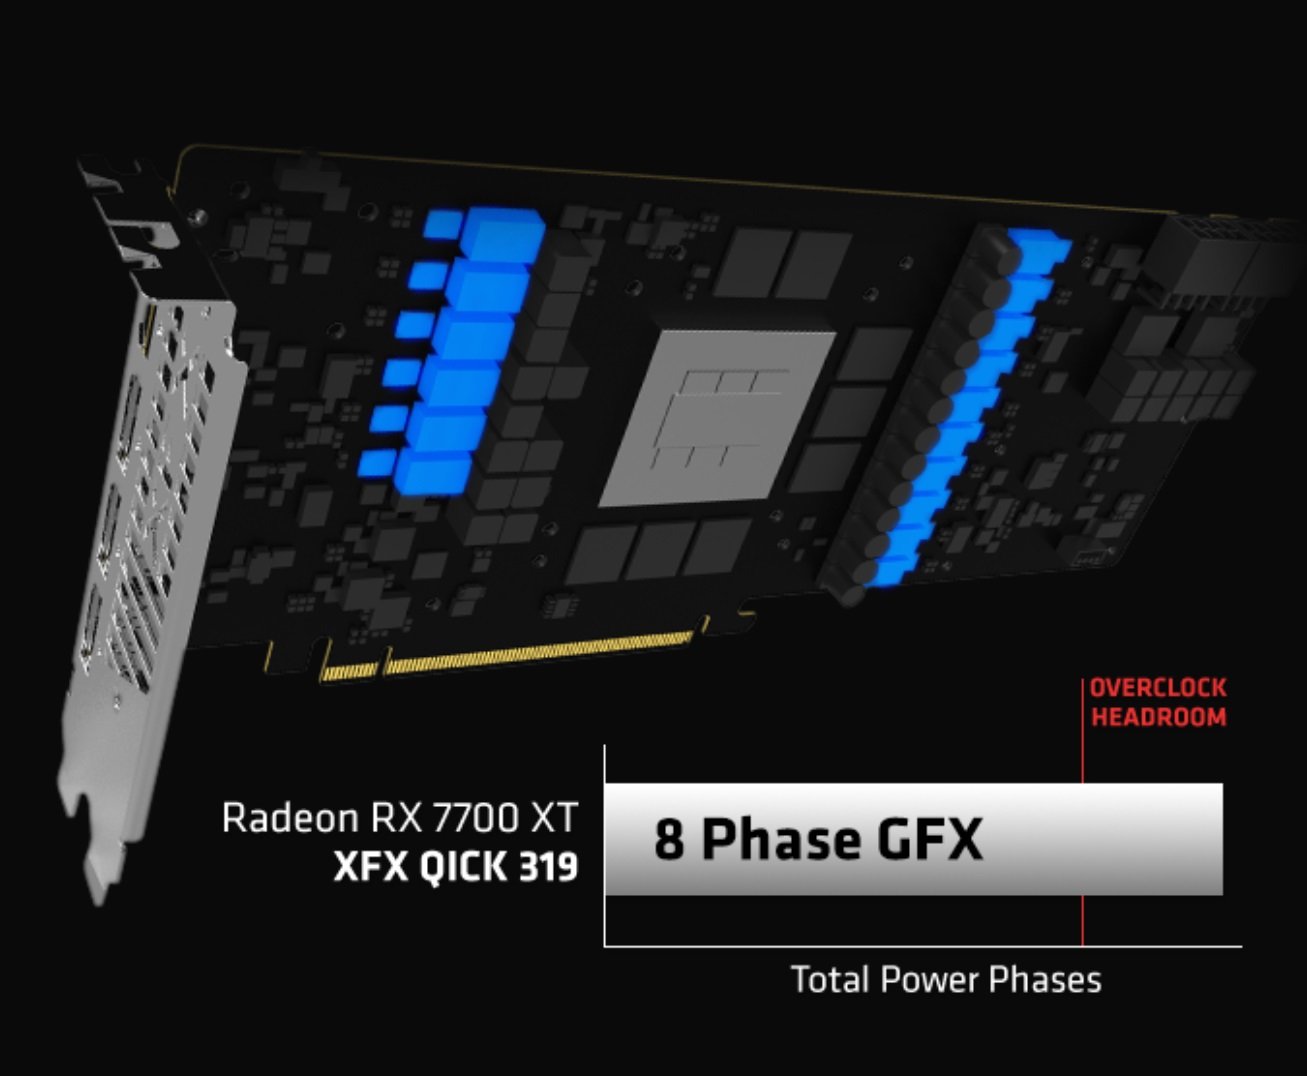 XFX SPEEDSTER QICK319 Radeon RX 7700 XT Video Card